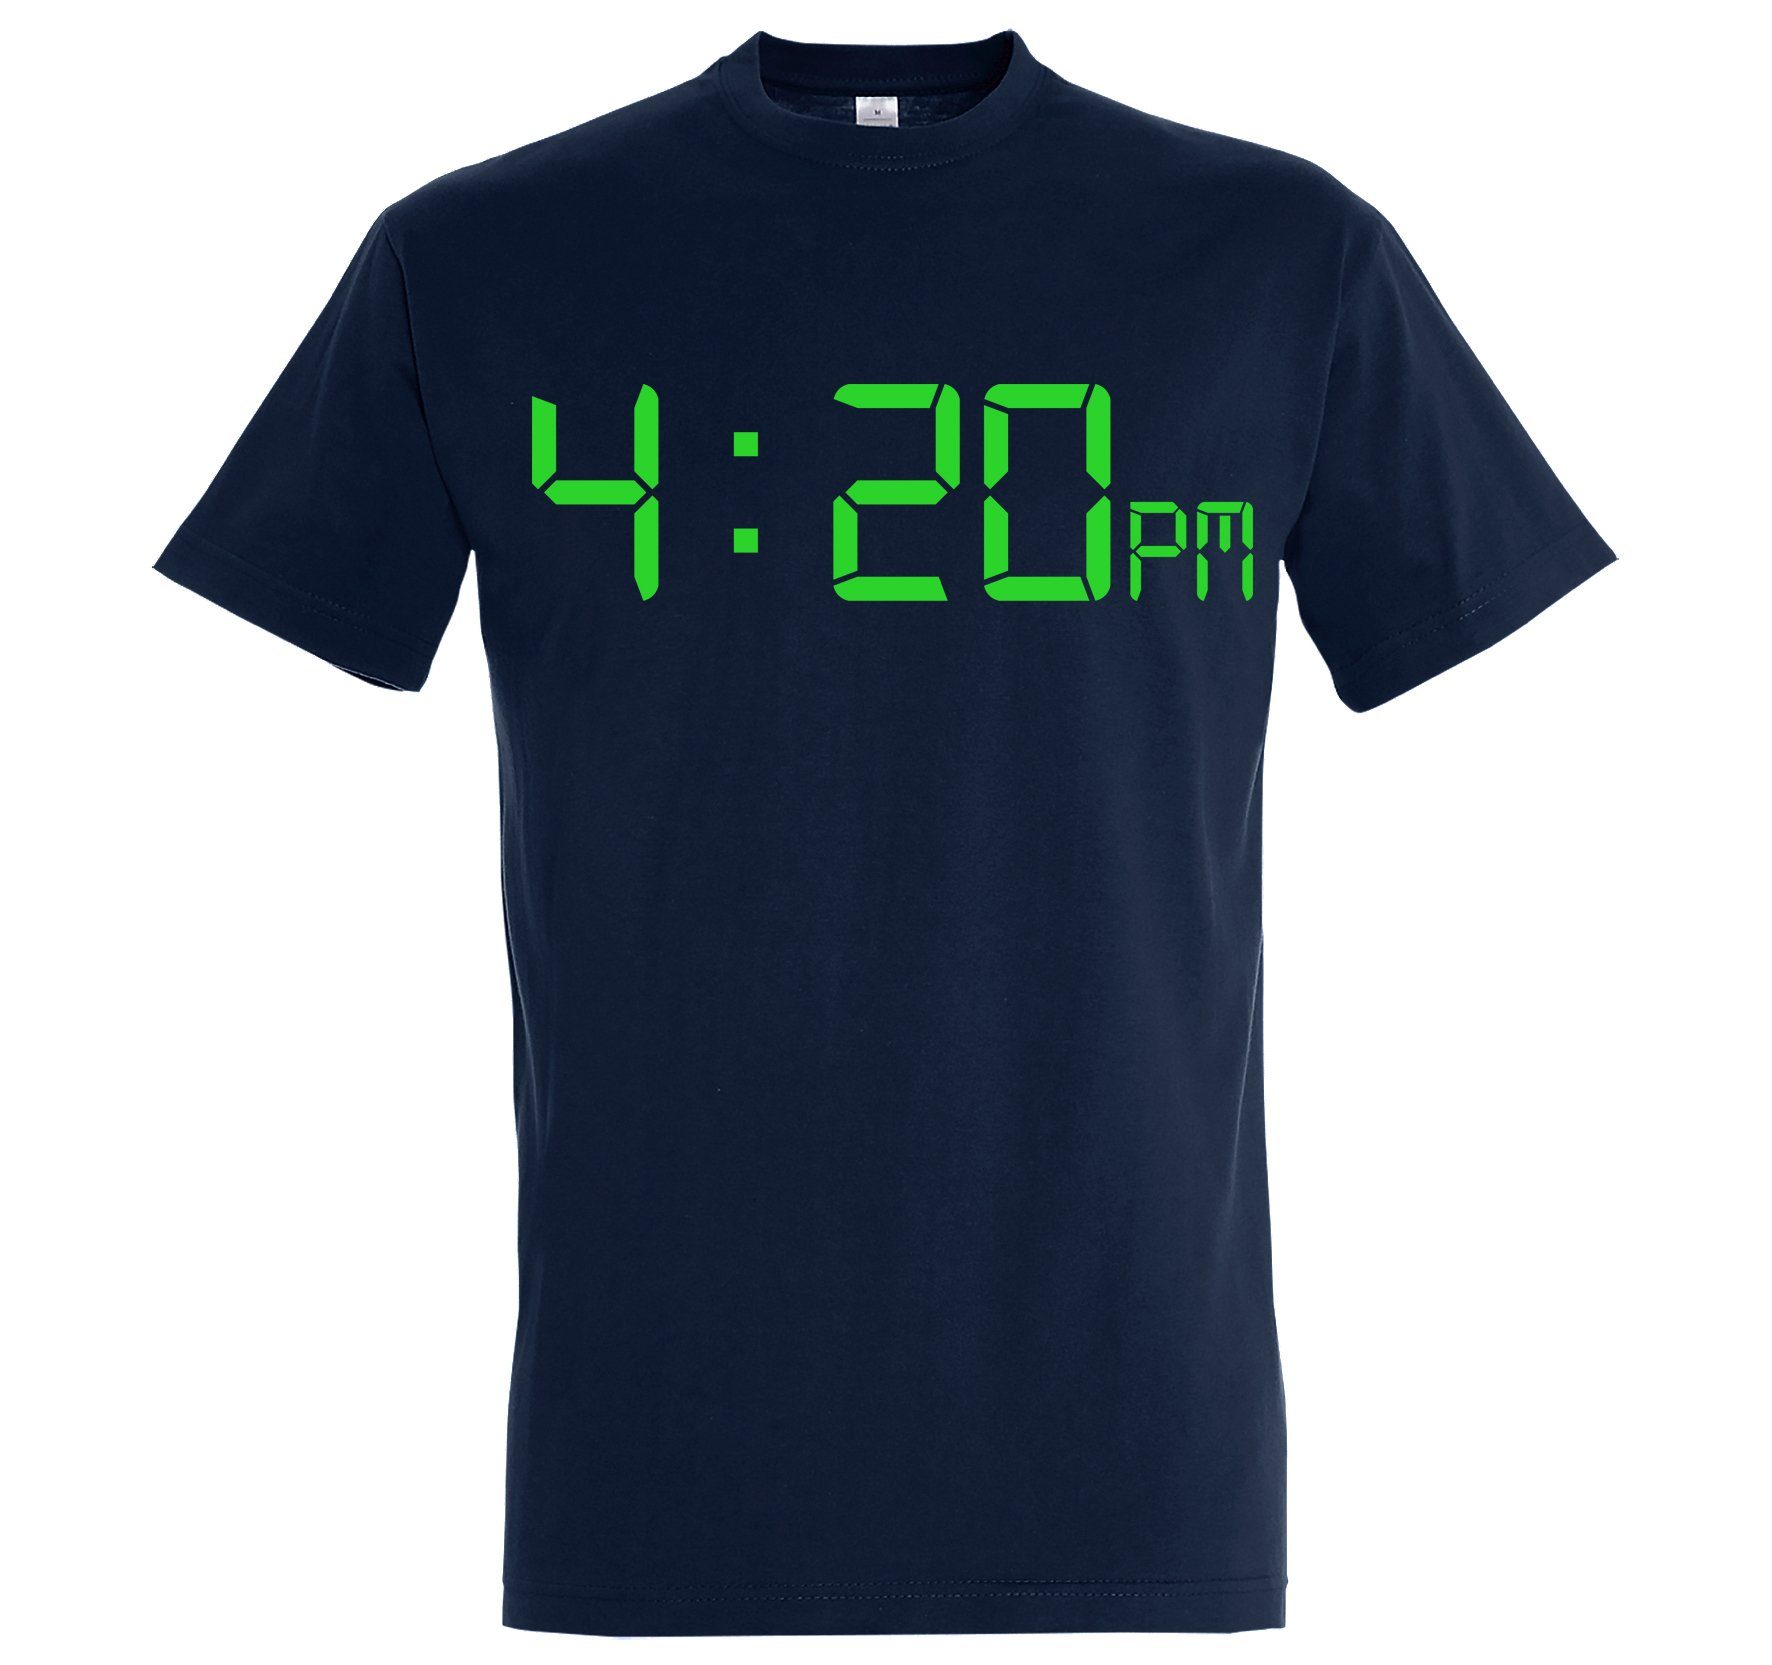 lustigem T-Shirt 4:20 Navyblau Frontprint T-Shirt Herren Youth Designz mit